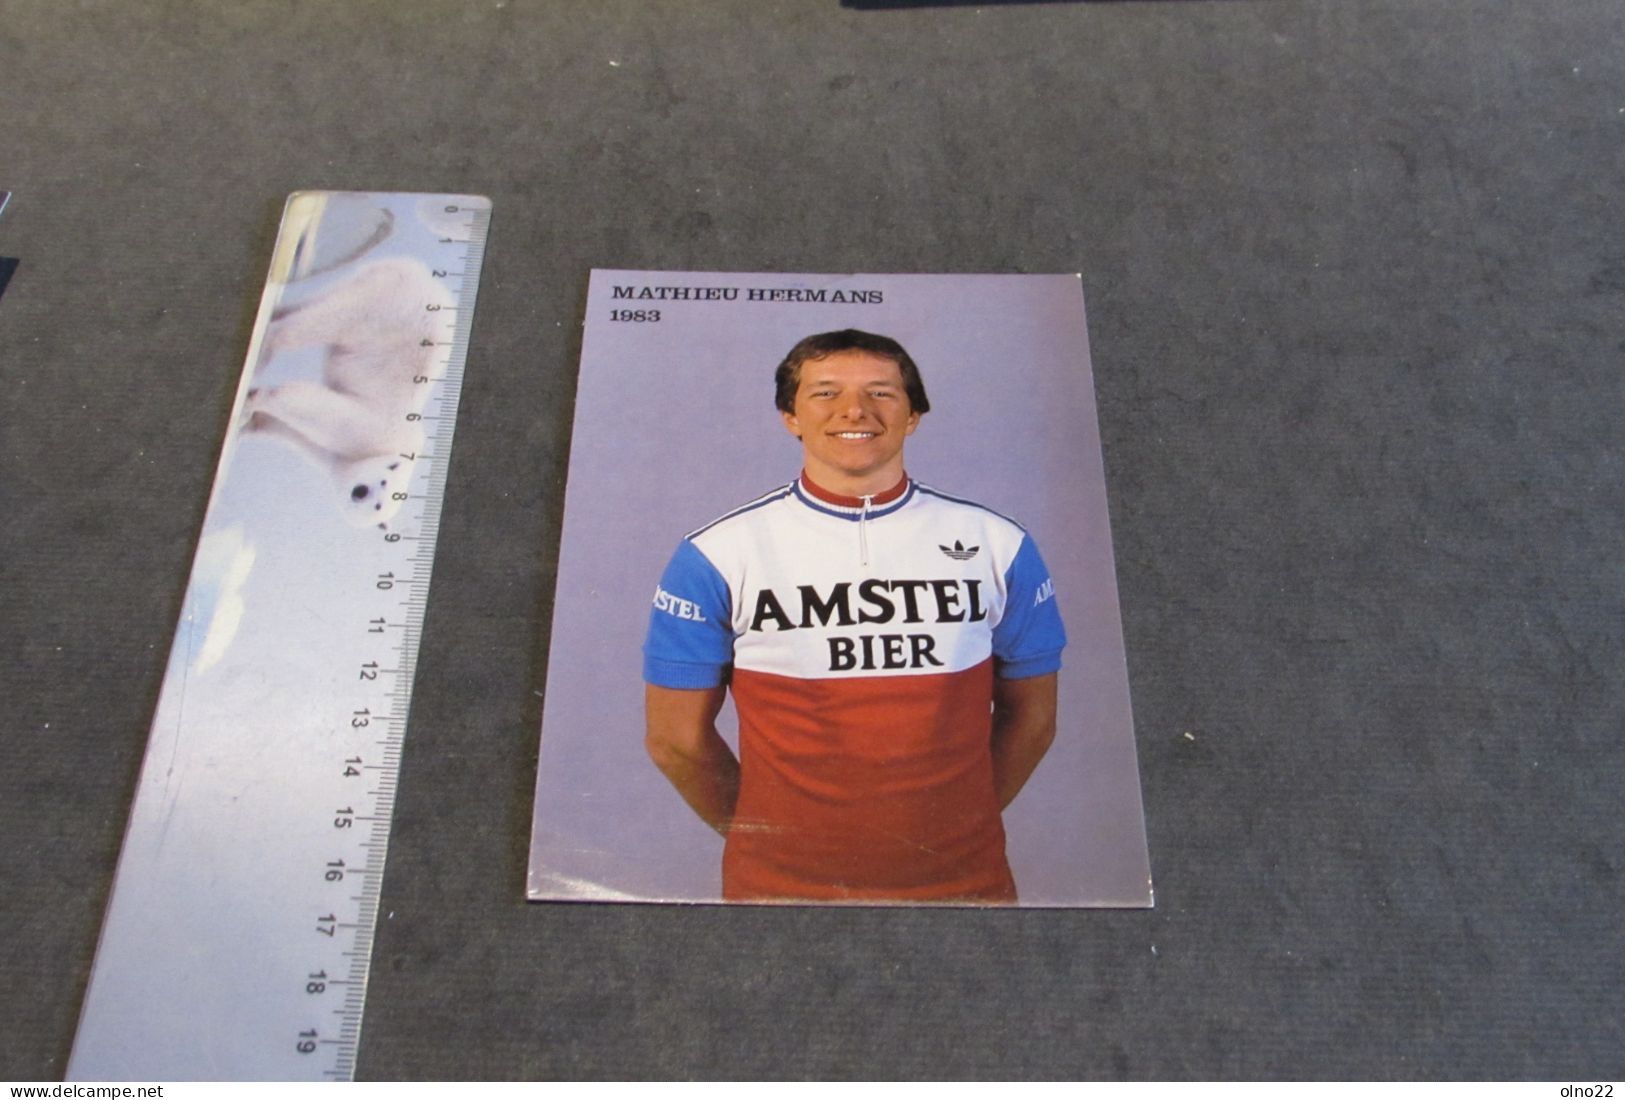 MATHIEU HERMANS 1983  - AMSTEL BIER - PHOTO COULEURS - VOIR SCANS - Sportler